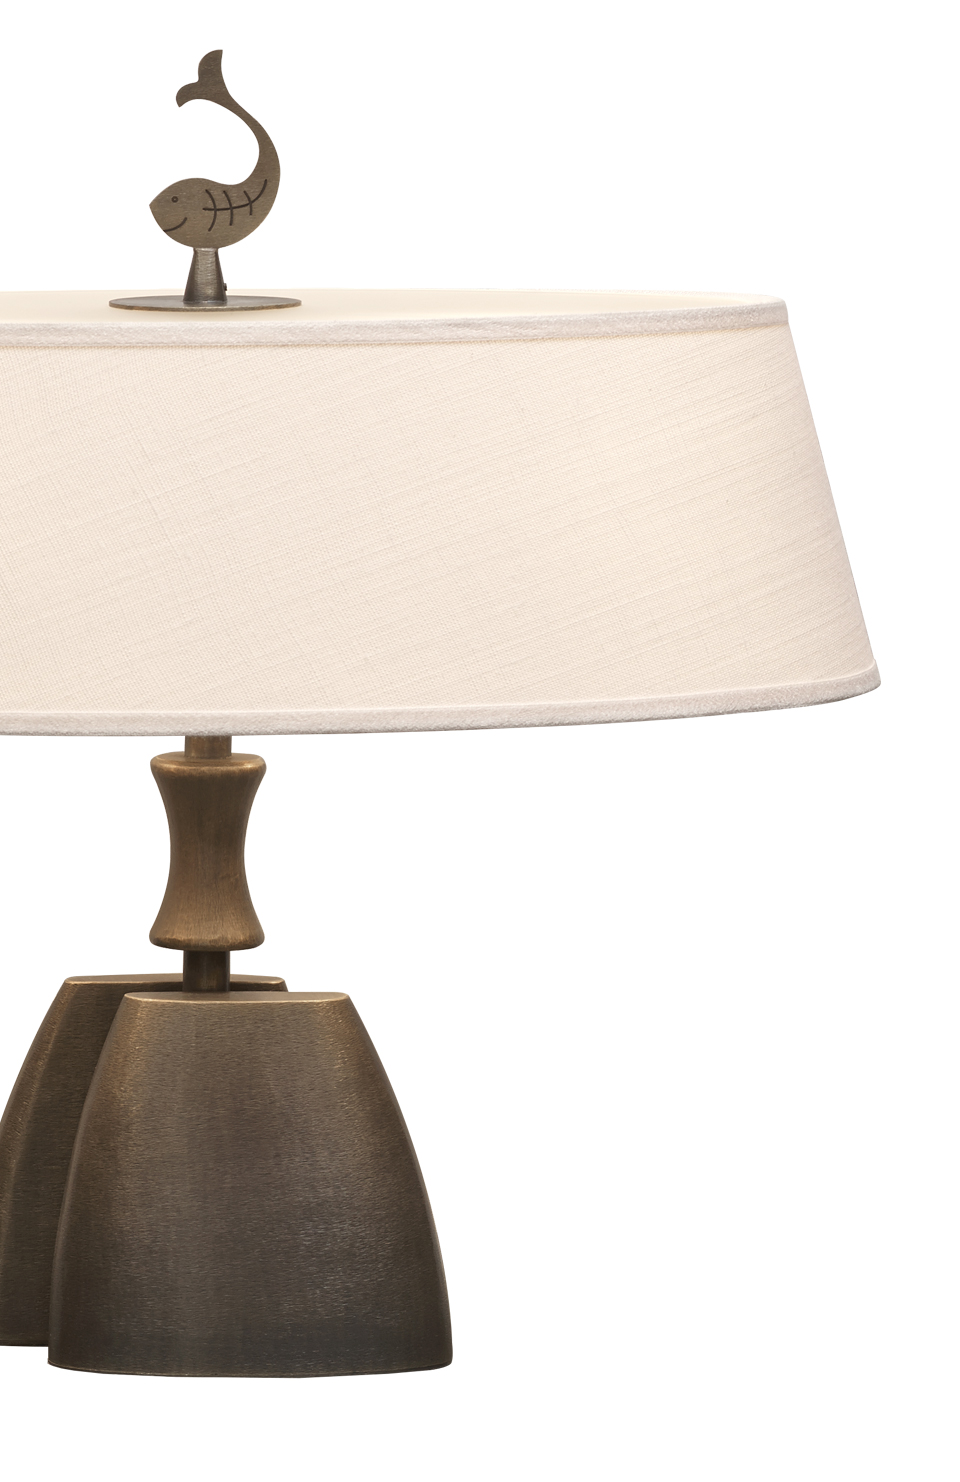 Misultin est une lampe LED à poser, avec un pied en bronze et un abat-jour en lin, coton ou soie avec bordure cousue main. Ce luminaire figure dans le catalogue Promemoria | Promemoria